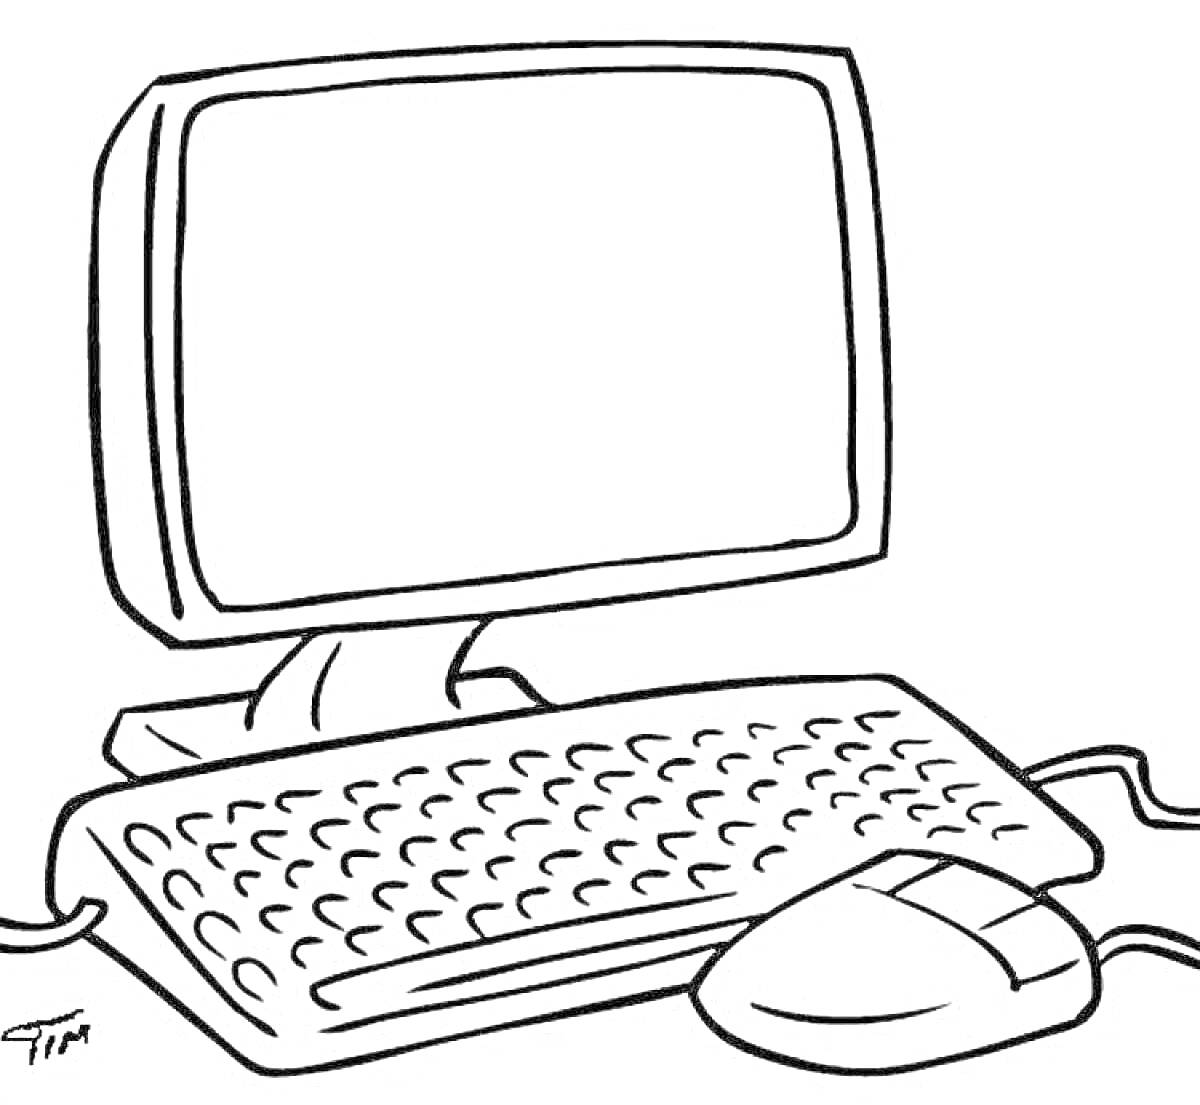 На раскраске изображено: Компьютер, Монитор, Клавиатура, Мышь, Техника, Электроника, Линии, Контурные рисунки